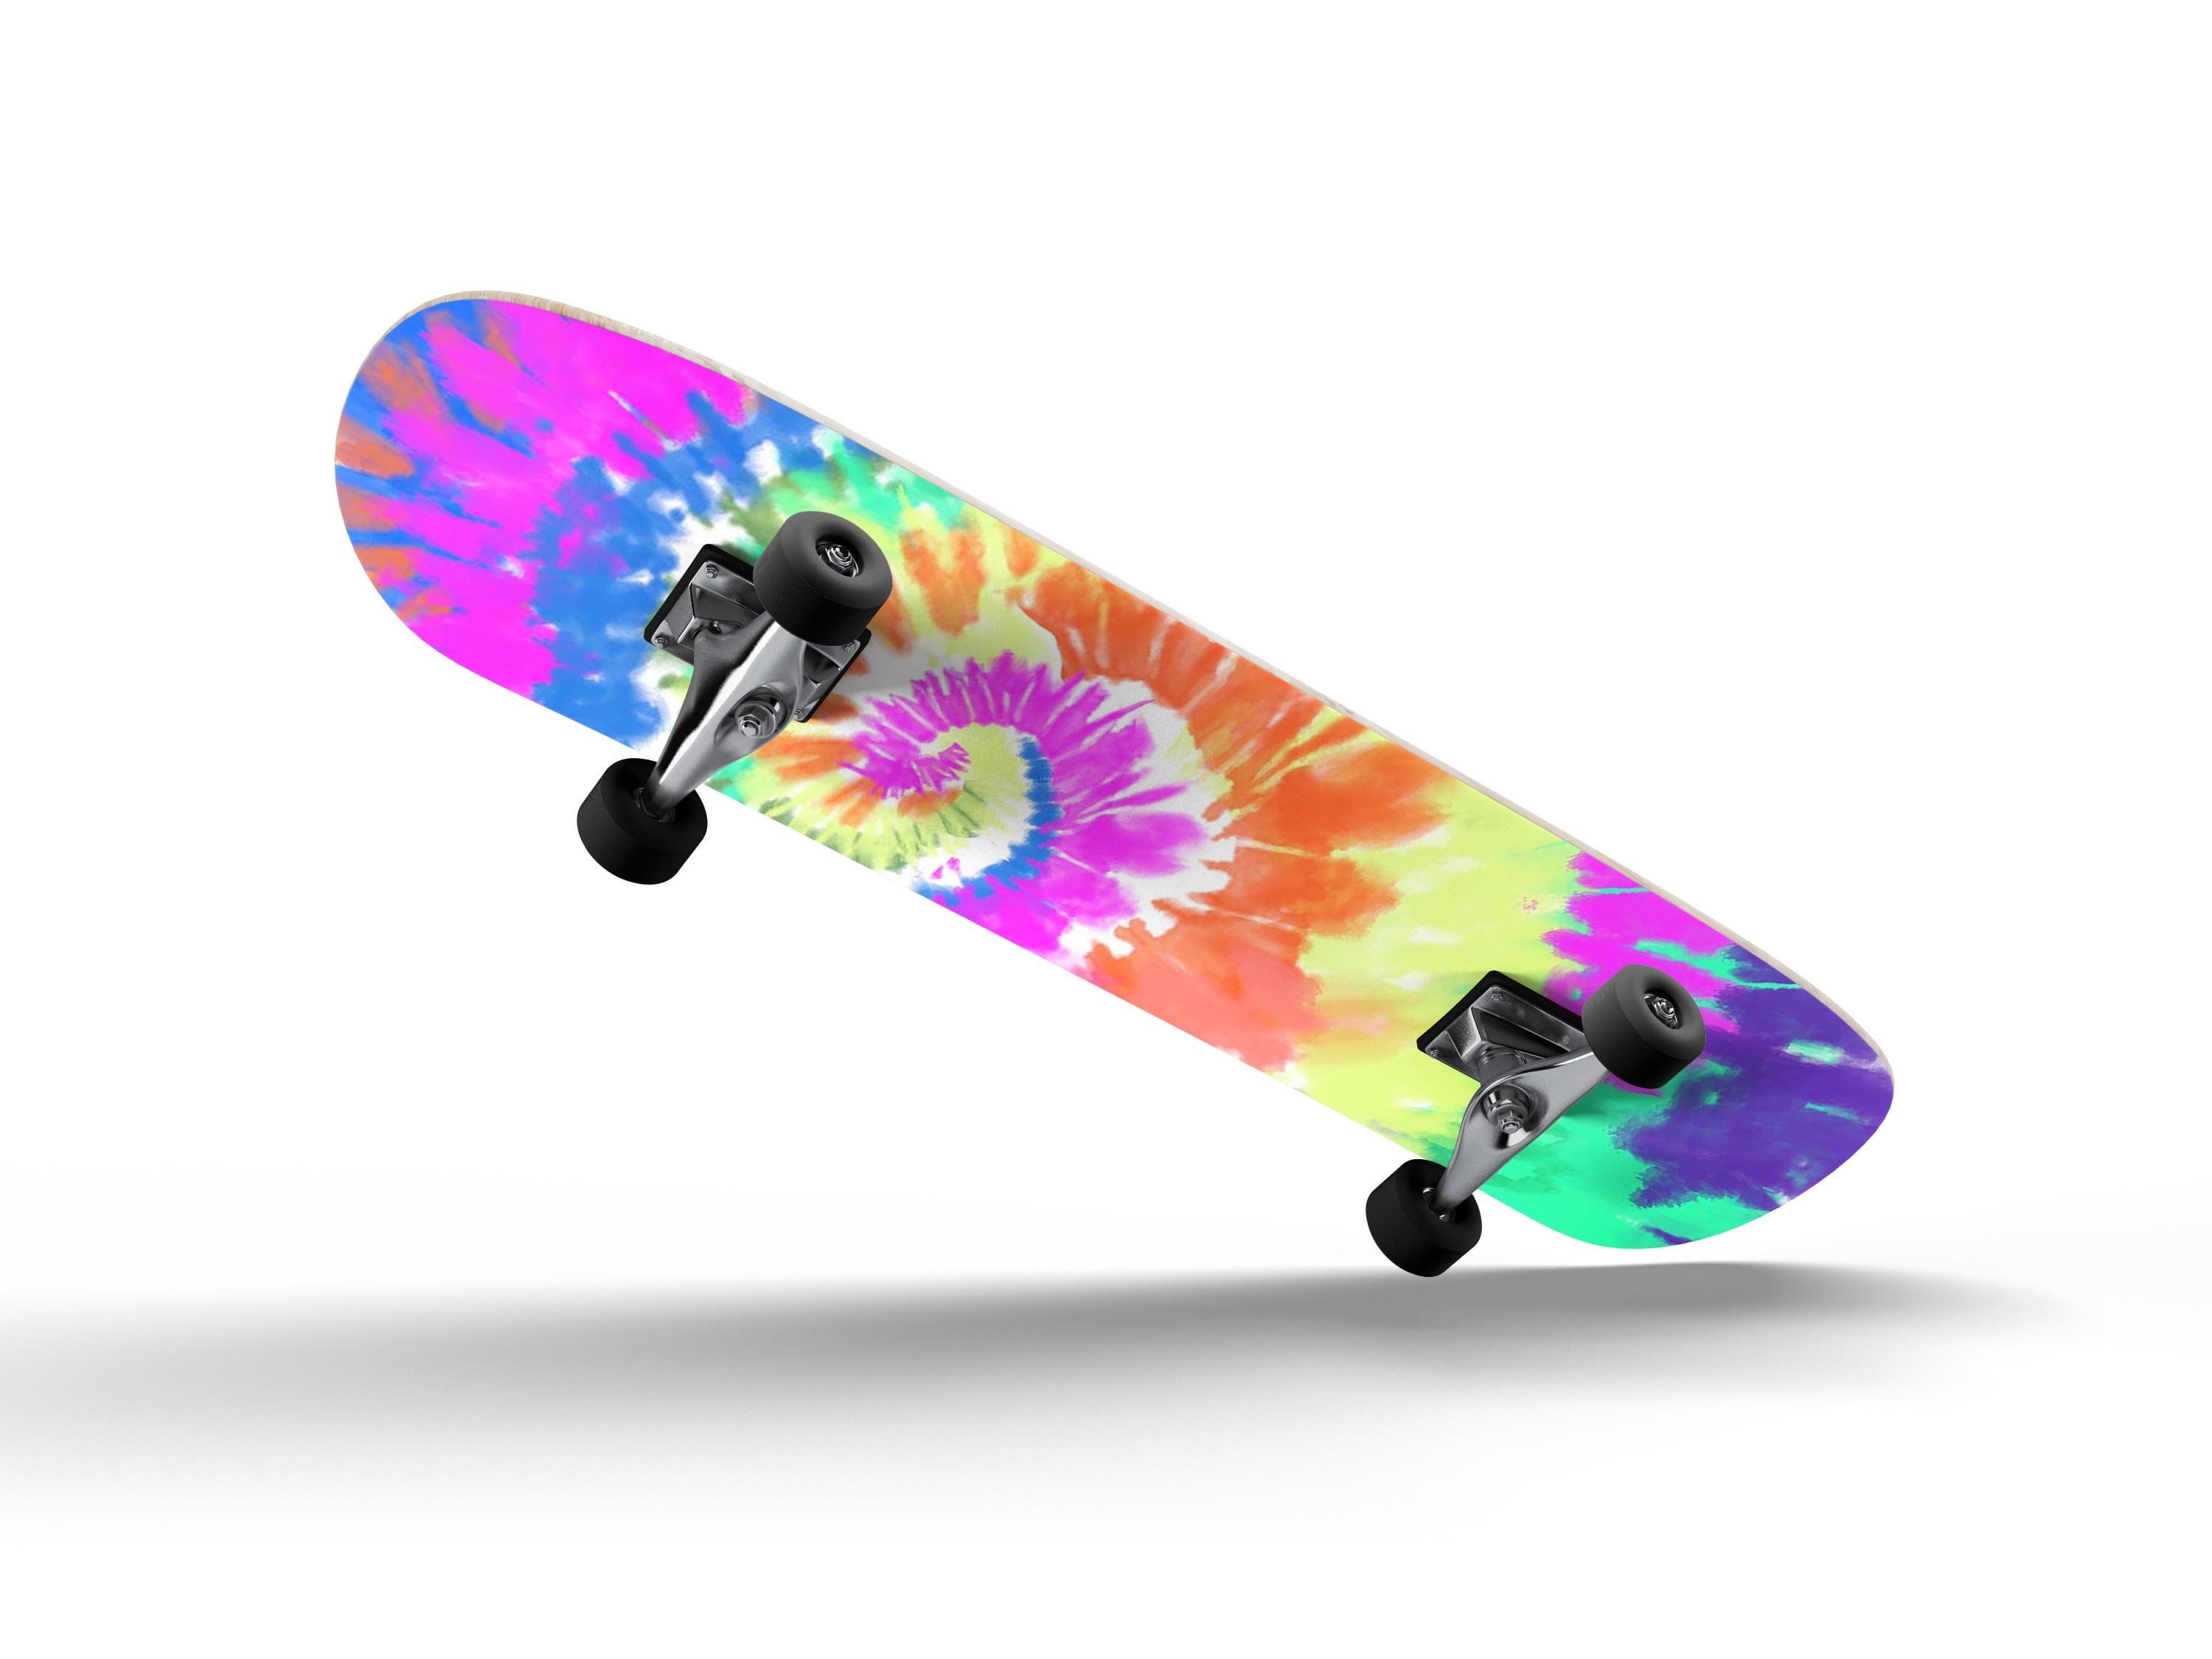 Clear Griptape Skateboard, DIY PROJECT, Skateboard Deck Ready, Wood  Skateboard Deck 